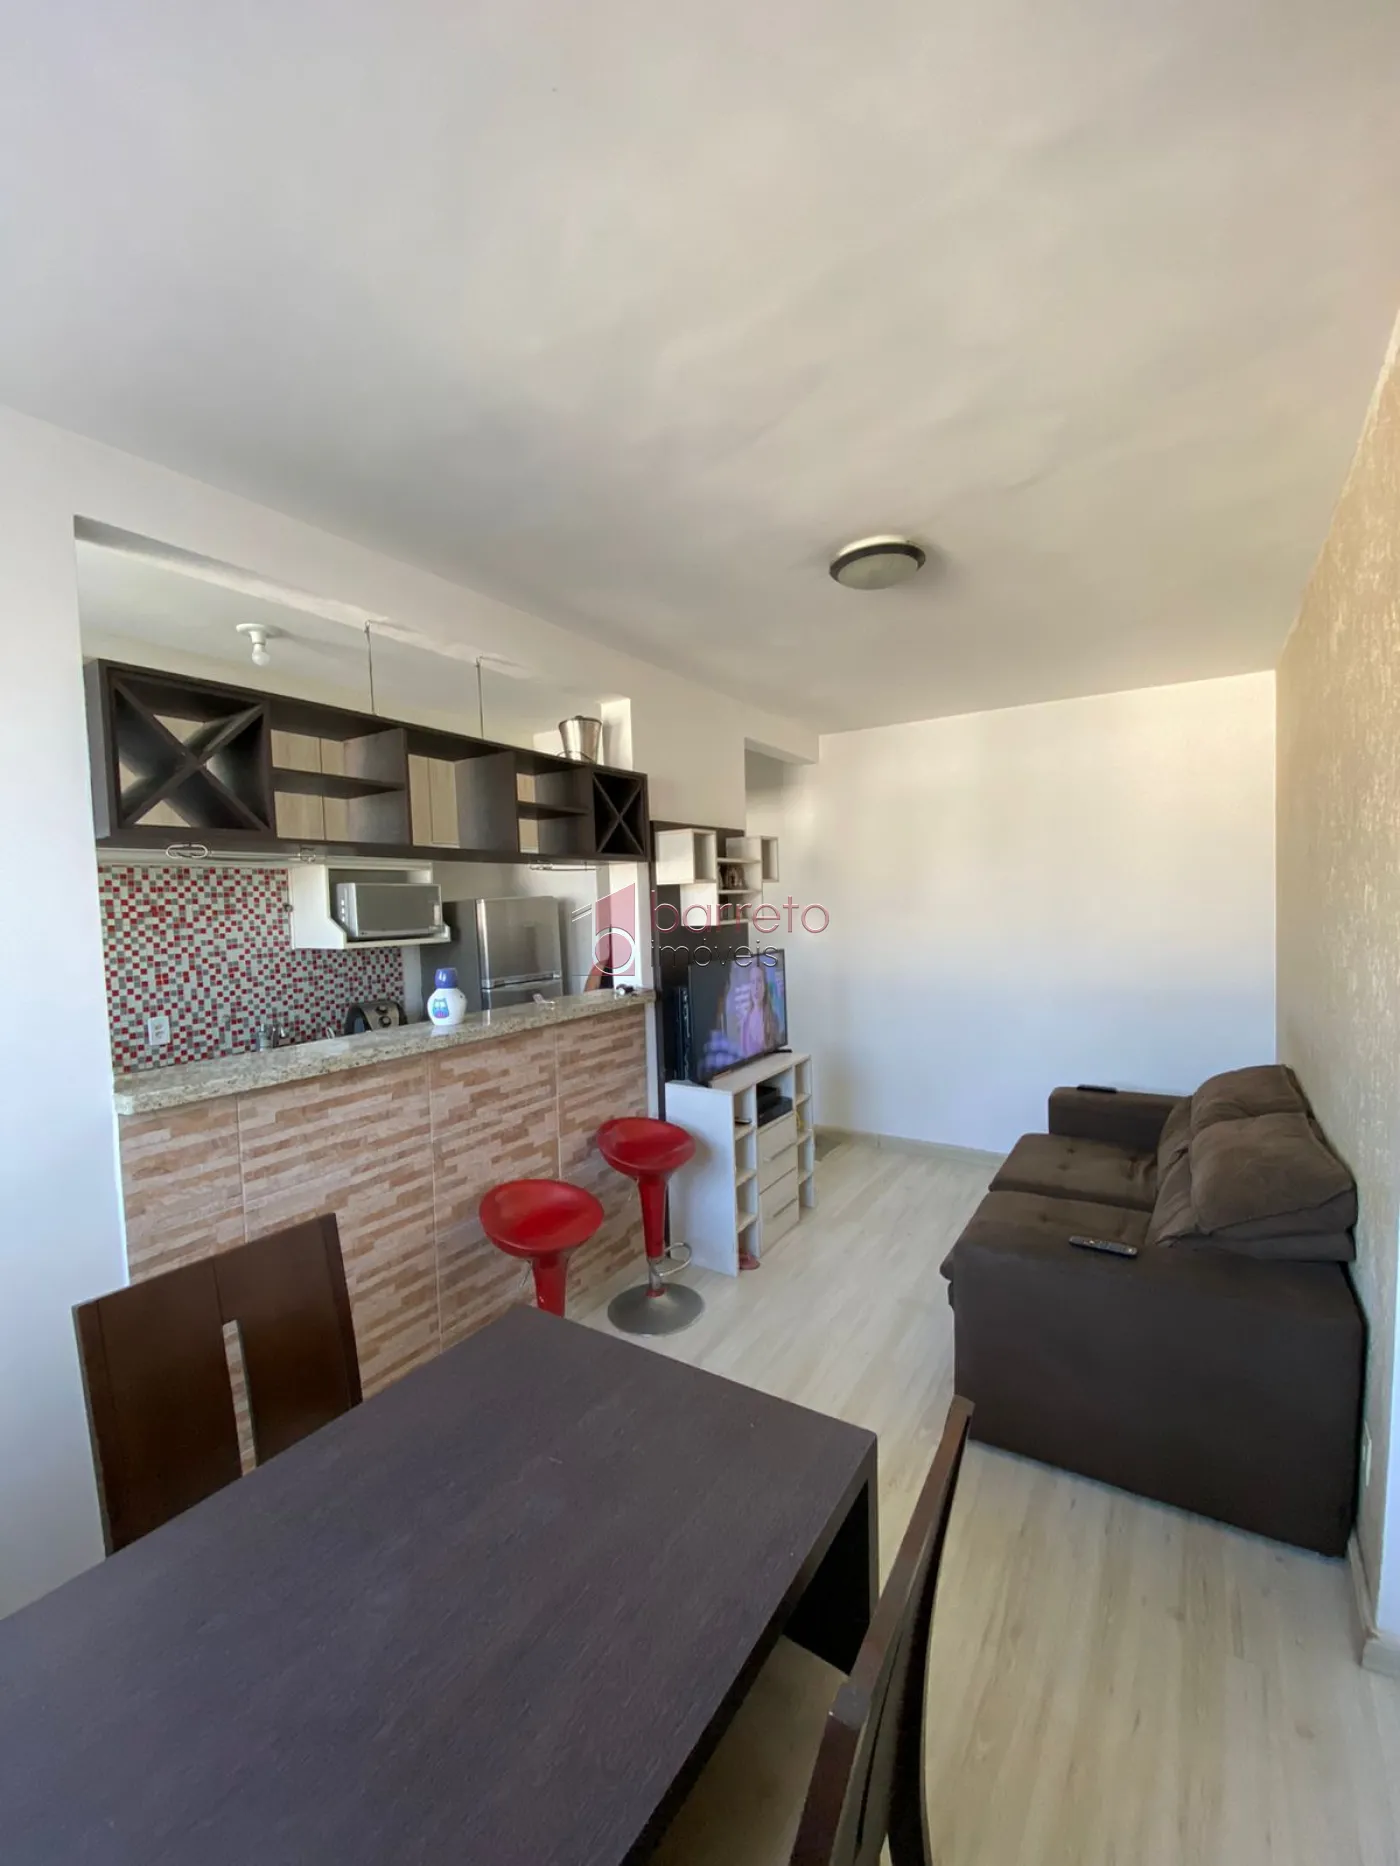 Alugar Apartamento / Padrão em Jundiaí R$ 1.550,00 - Foto 2